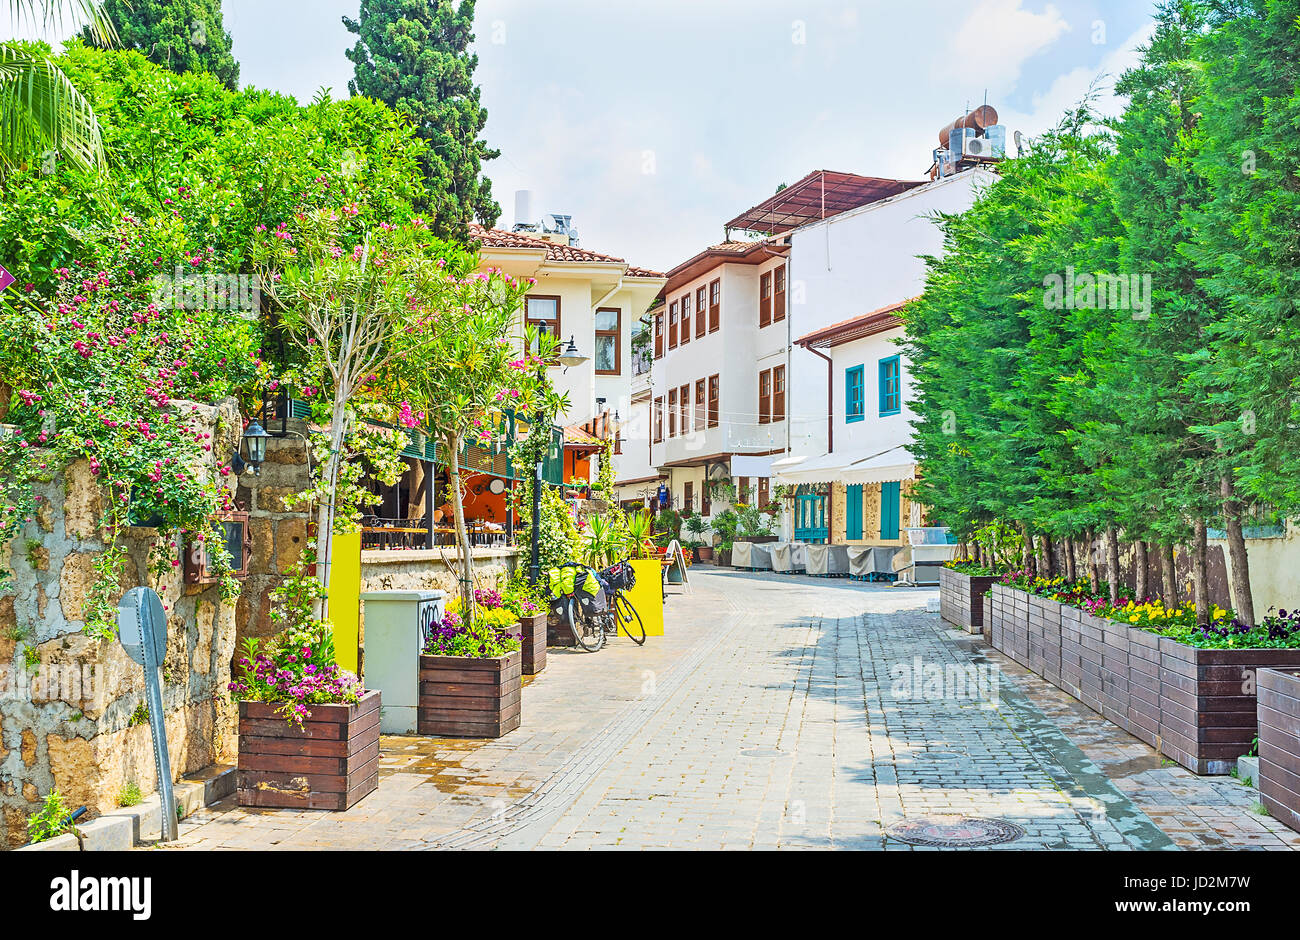 Die schmale Straße von Kaleici Viertel verziert mit zahlreichen Bäumen und Blumen in den Wannen, Antalya, Türkei. Stockfoto